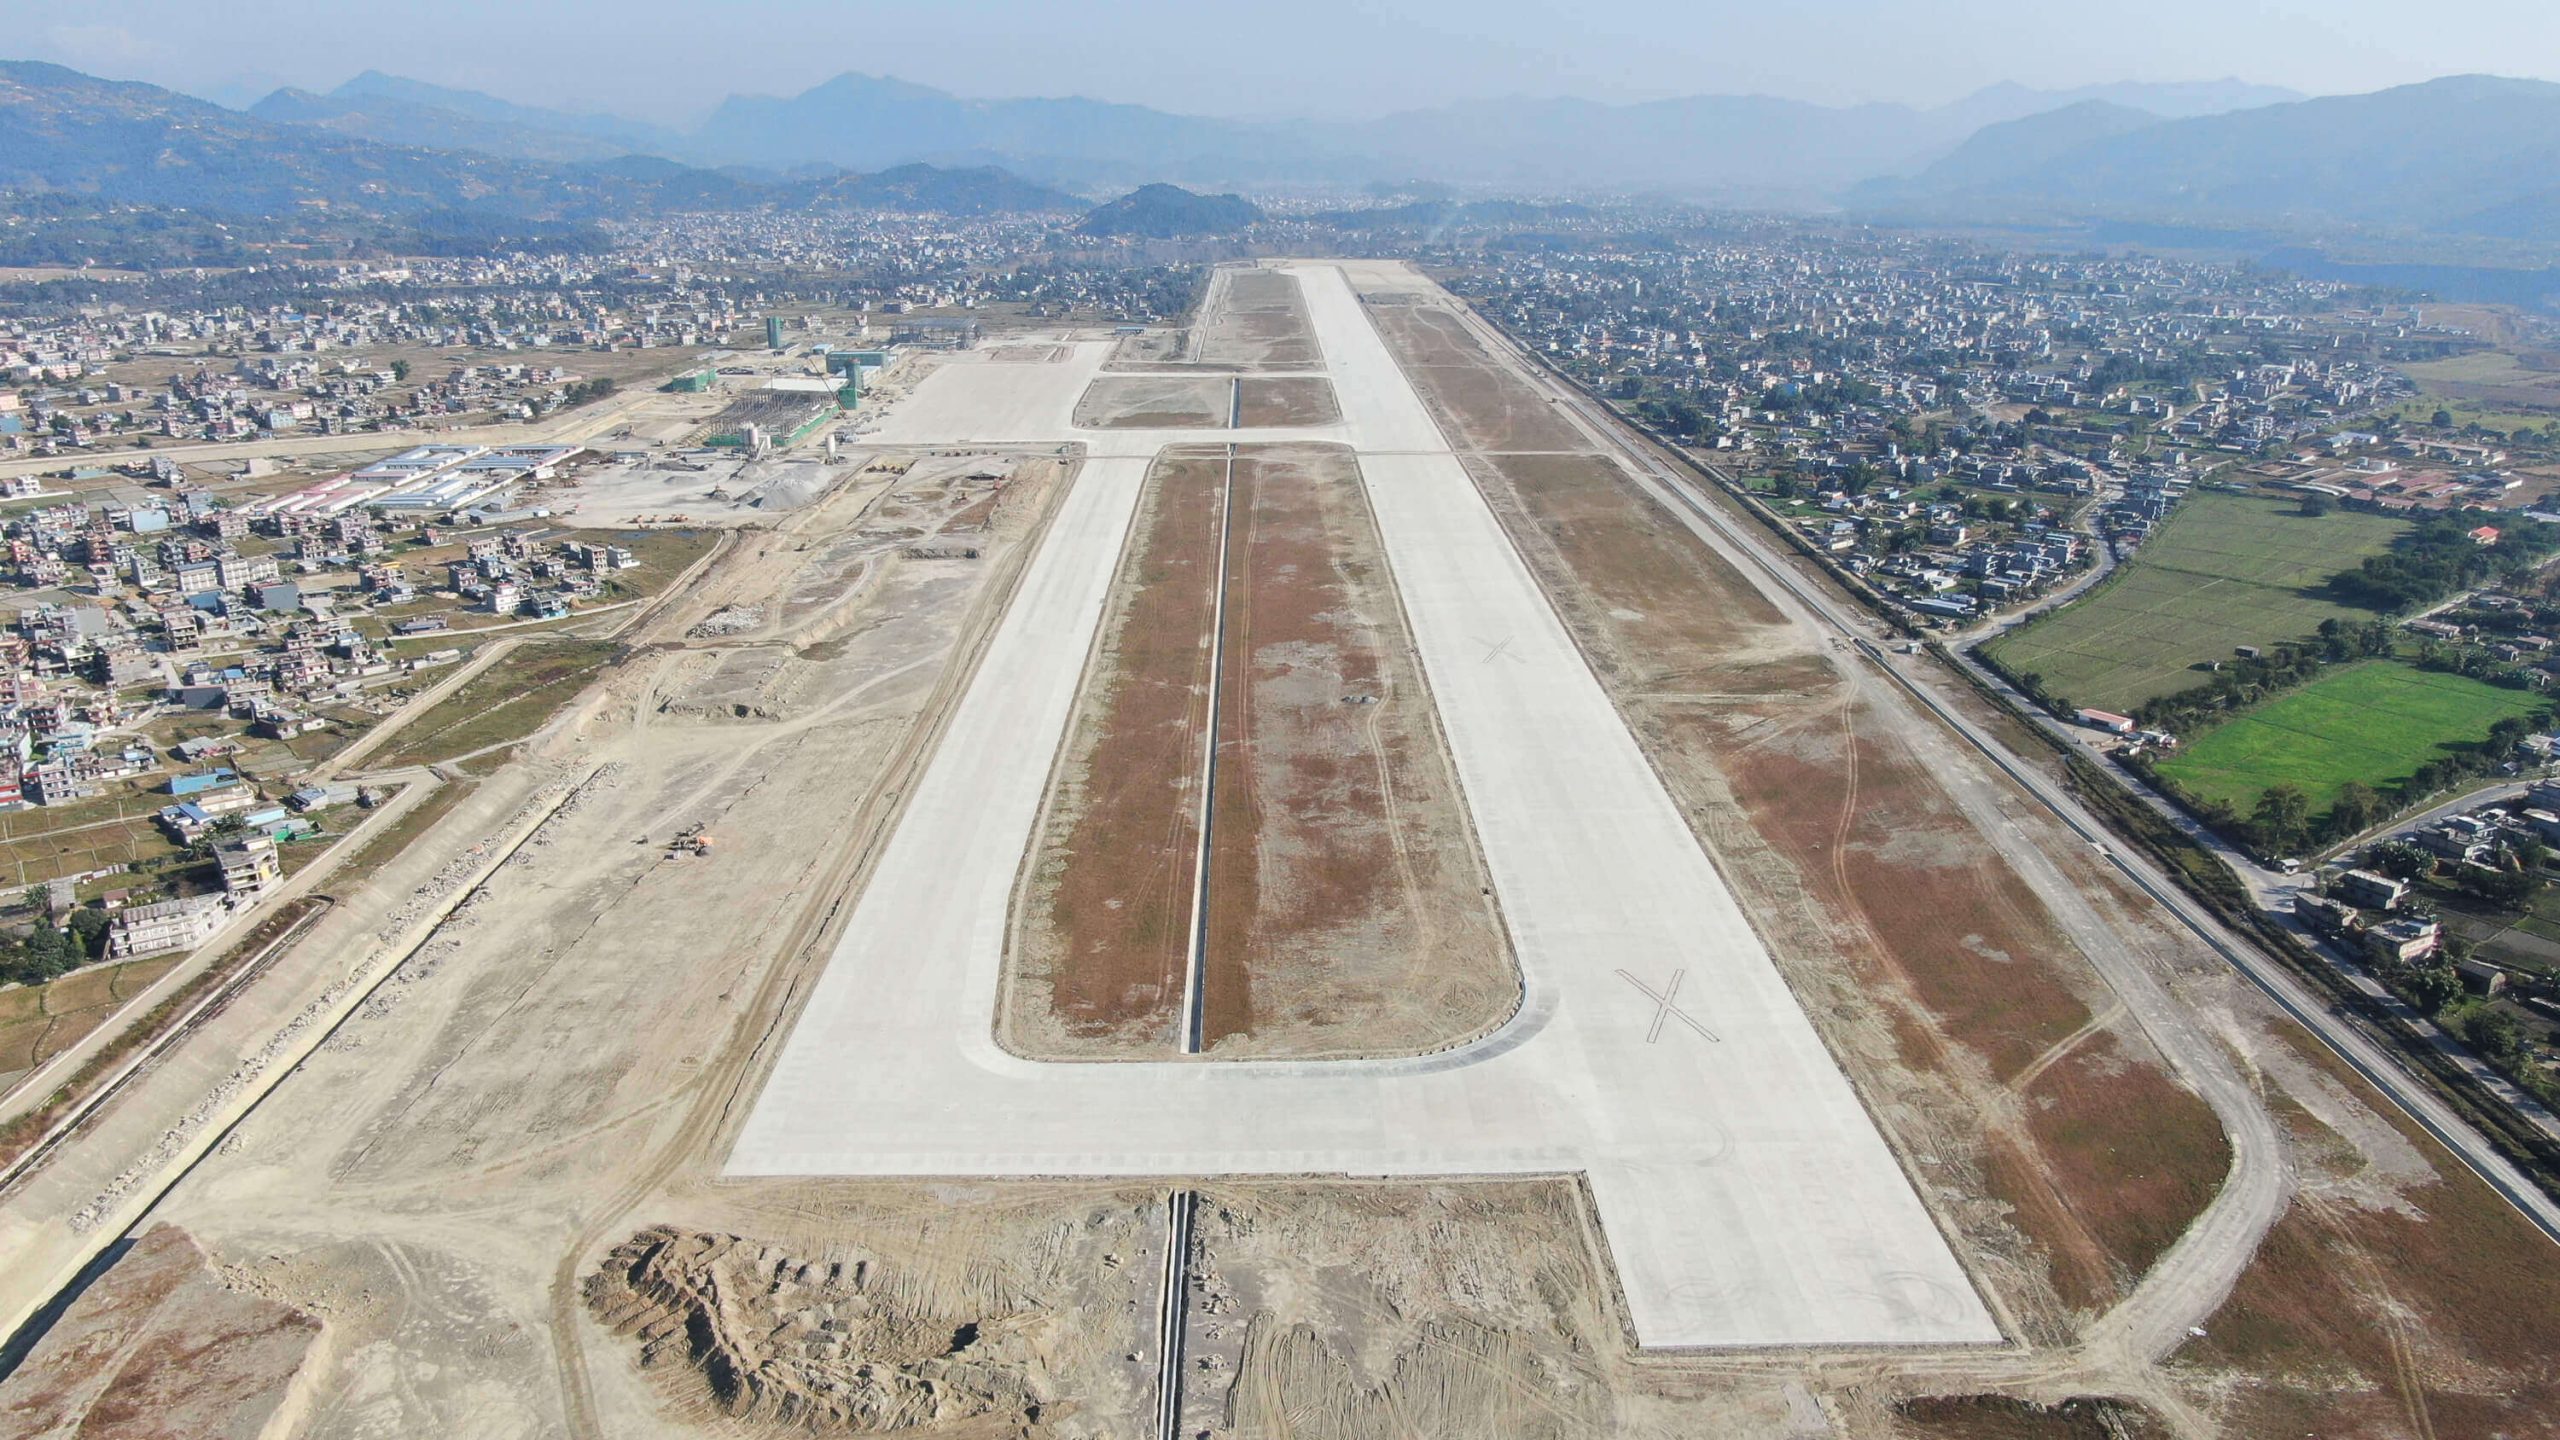 Aeroport Pokhara piste atterrissage ouest-est